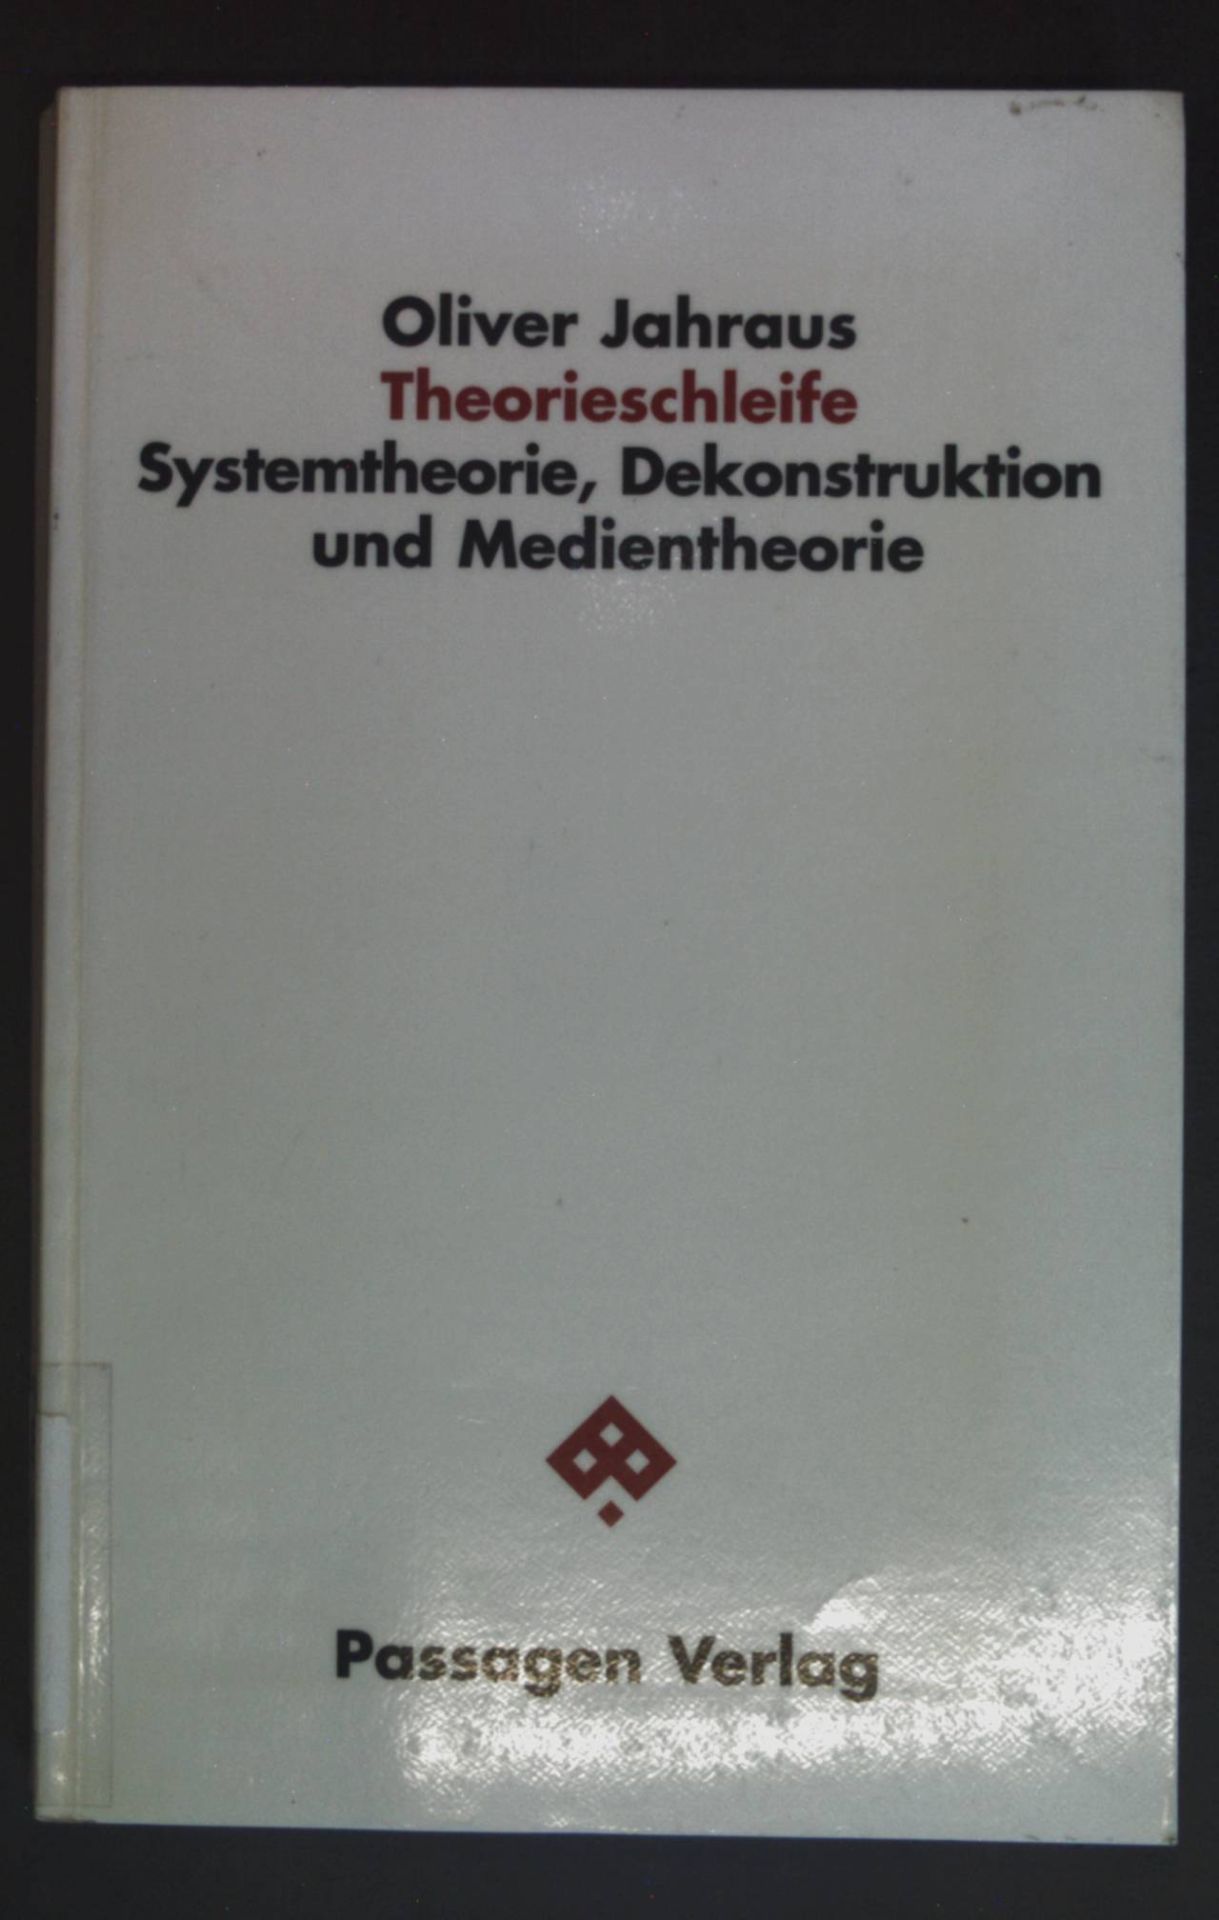 Theorieschleife : Systemtheorie, Dekonstruktion und Medientheorie. Passagen Philosophie - Jahraus, Oliver